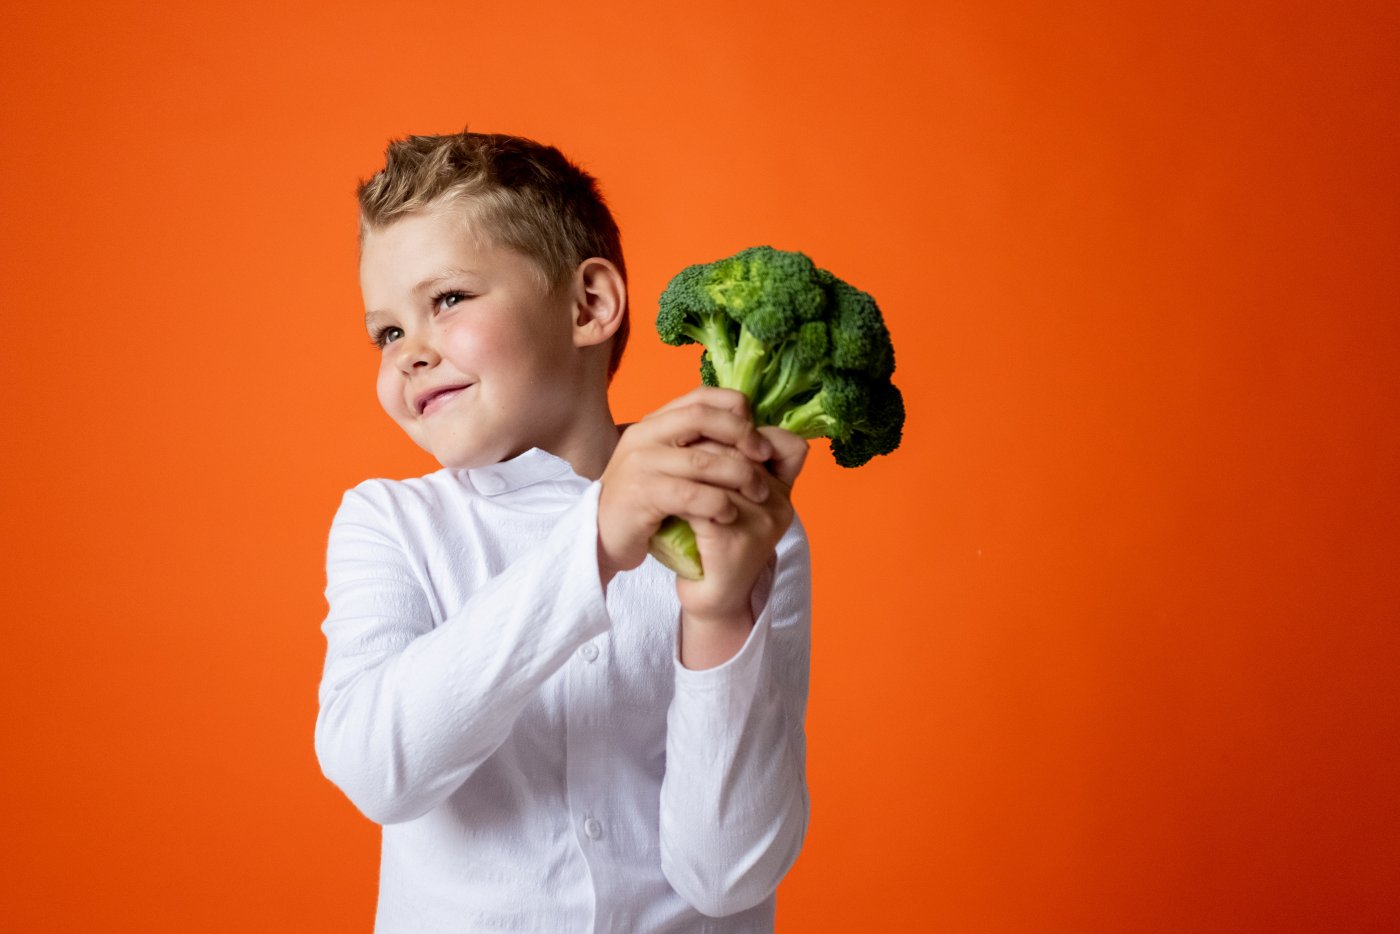 Zmiana nawyków żywieniowych wśród dzieci to jeden z celów programu // fot. pexels.com